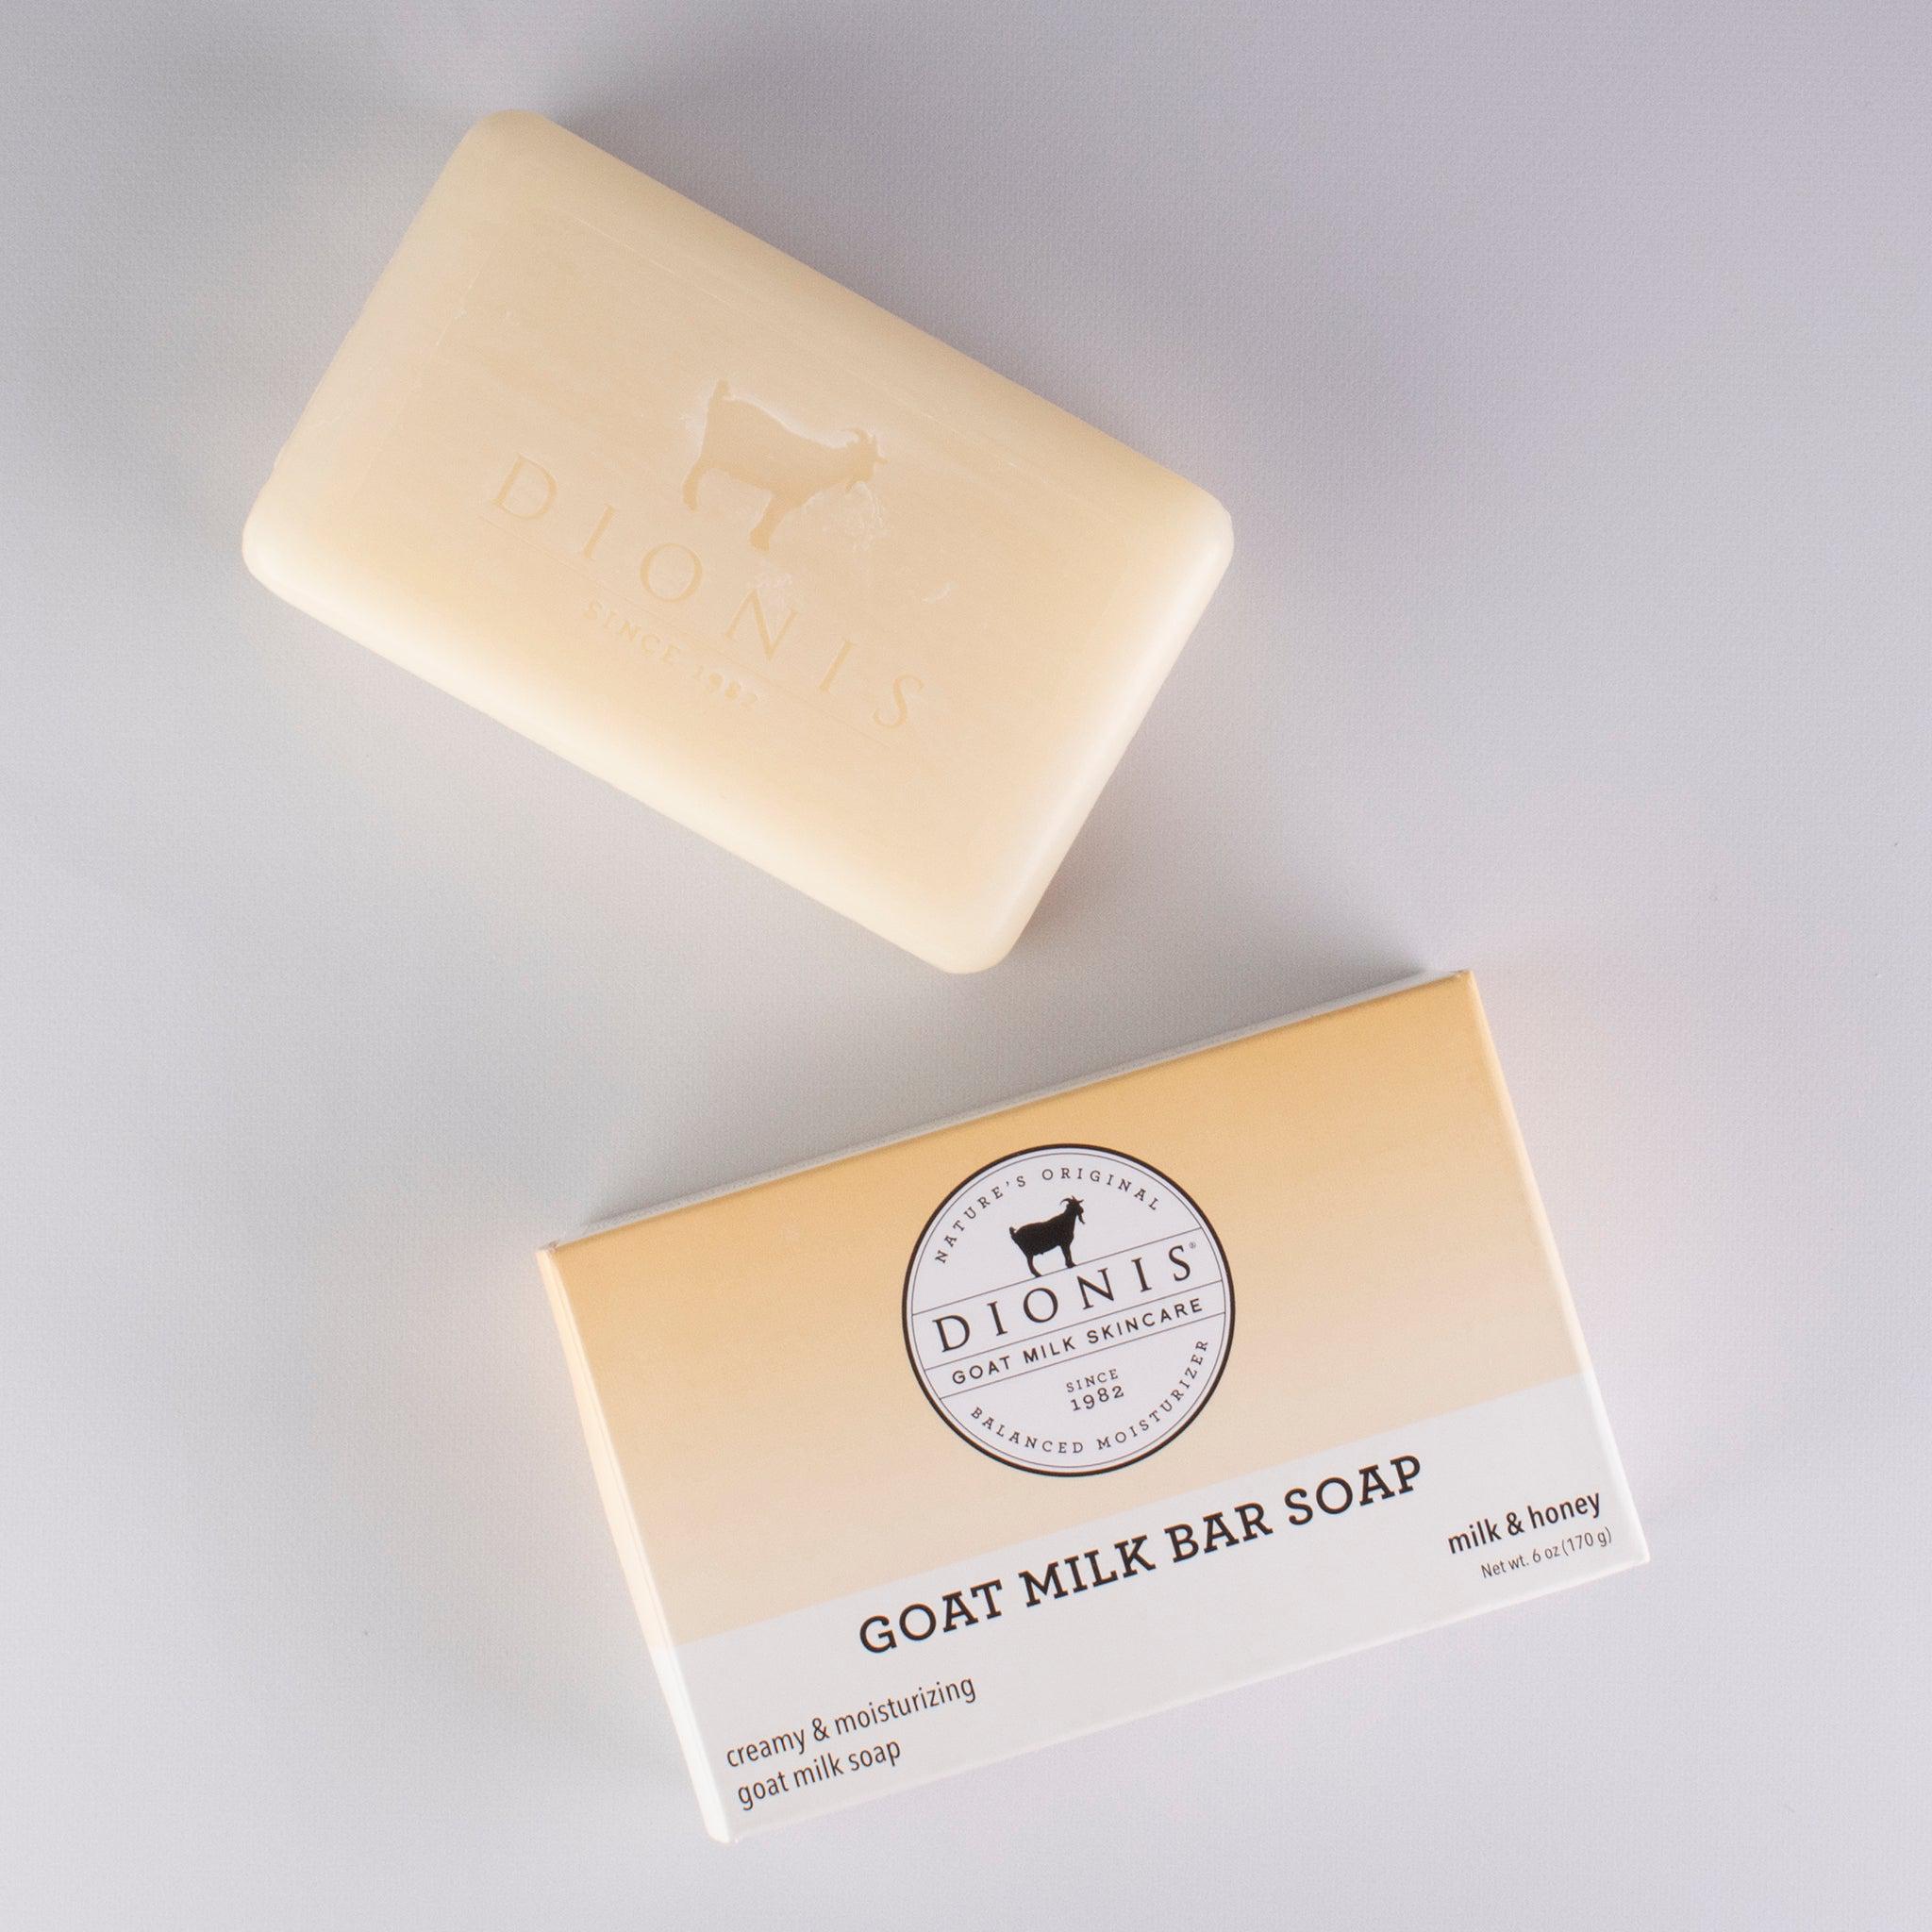 Milk & Honey Goat Milk Bar Soap